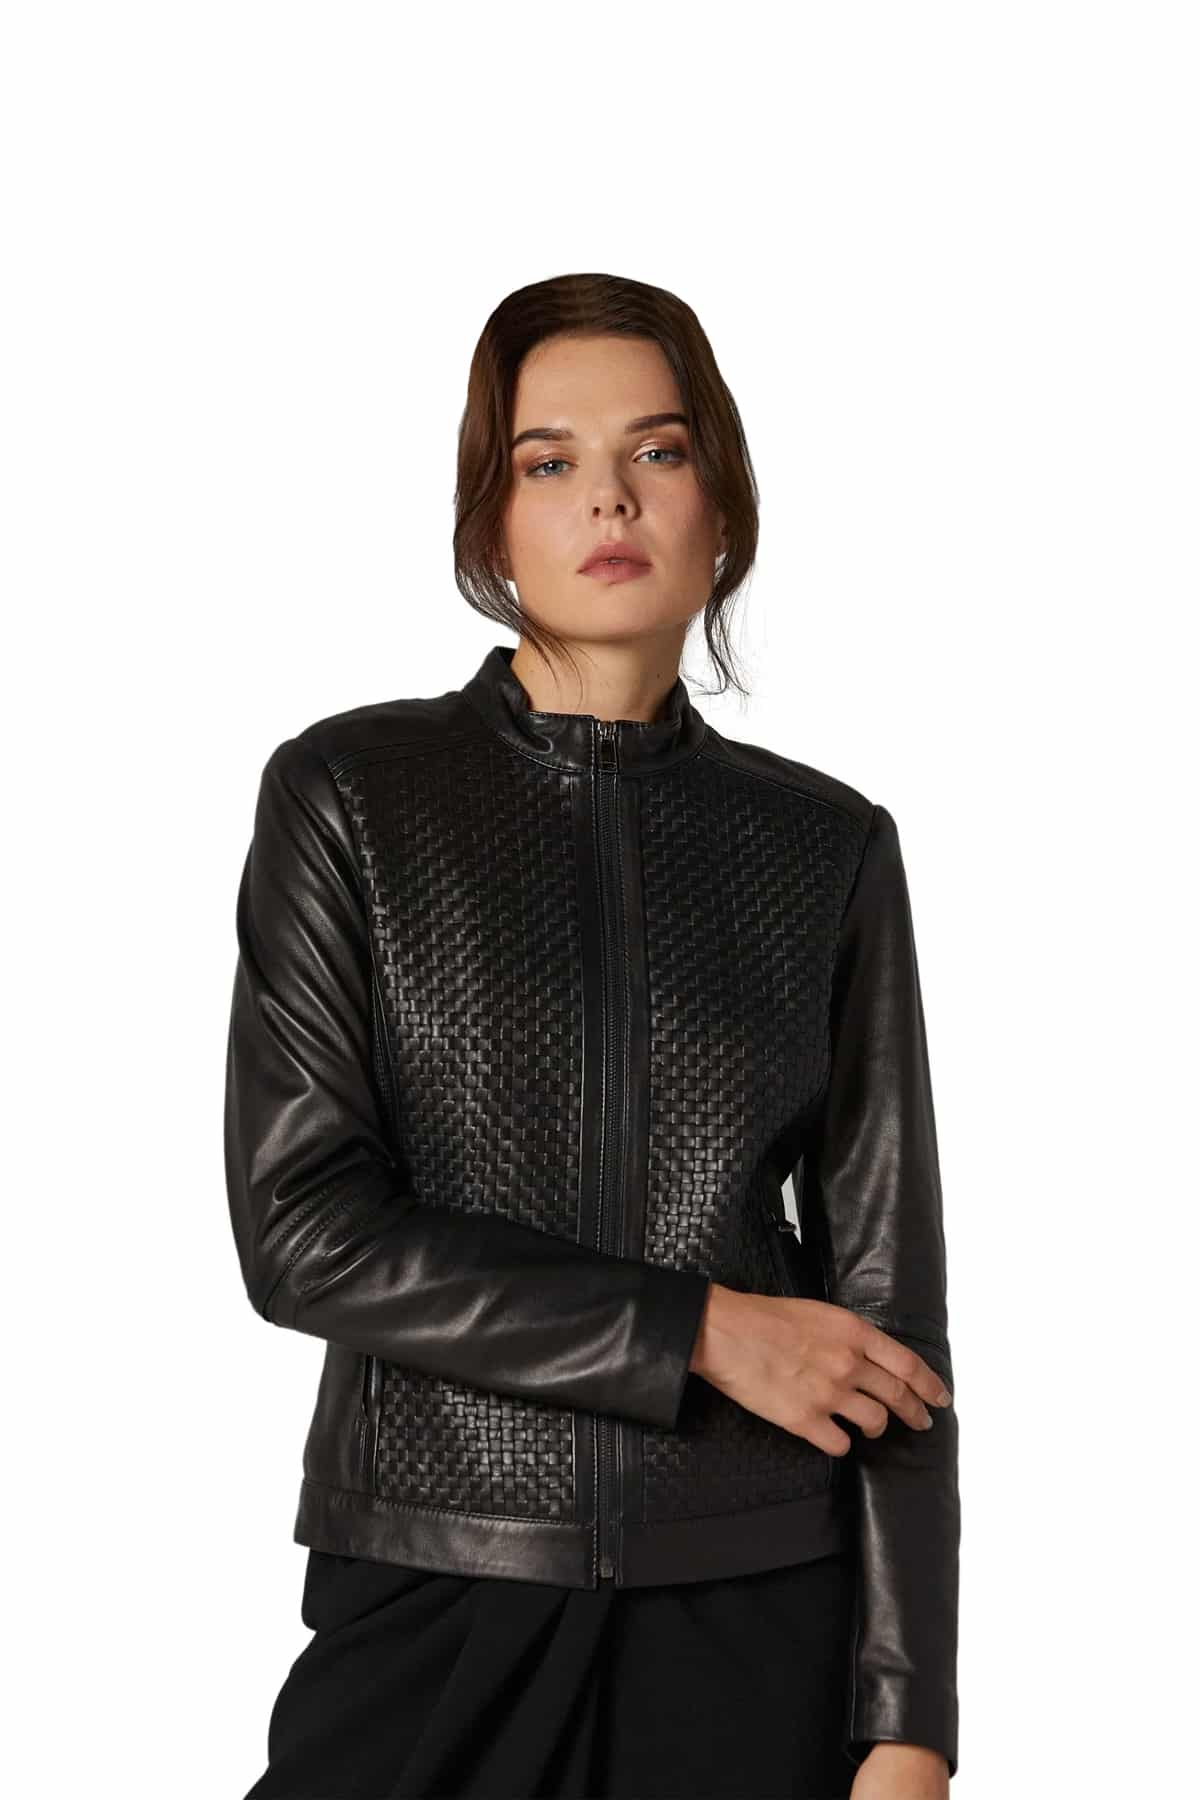 Miranda Kerr Women's 100 % Real Black Leather Biker Style Jacket